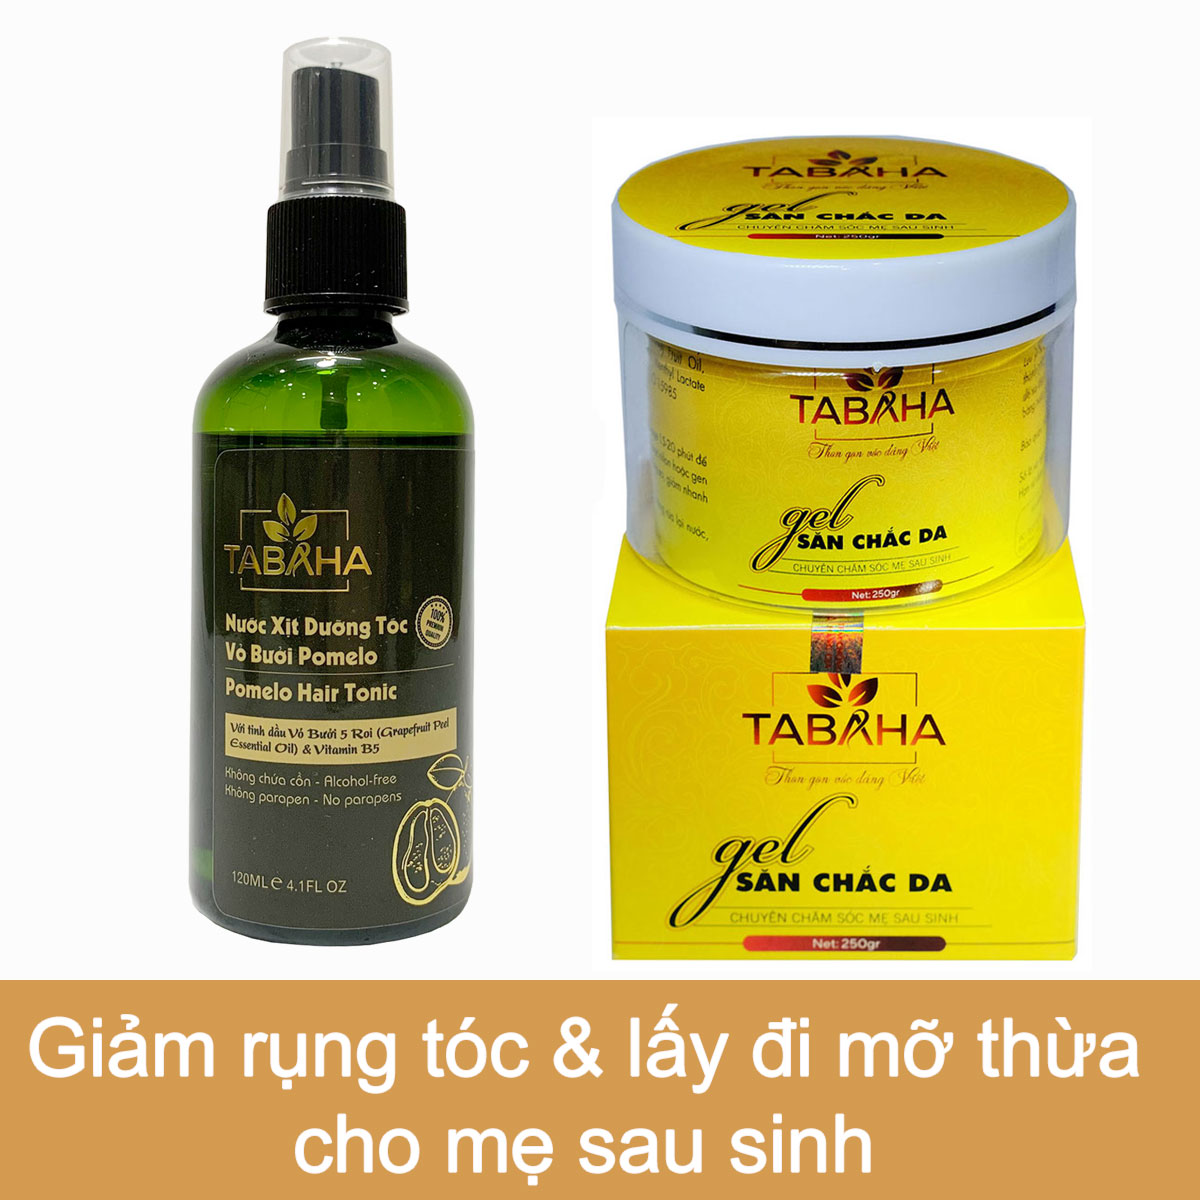 Combo Kem tan mỡ Tabaha 250g và Xịt dưỡng tóc tinh dầu bưởi 120ml Tabaha chăm sóc mẹ sau sinh